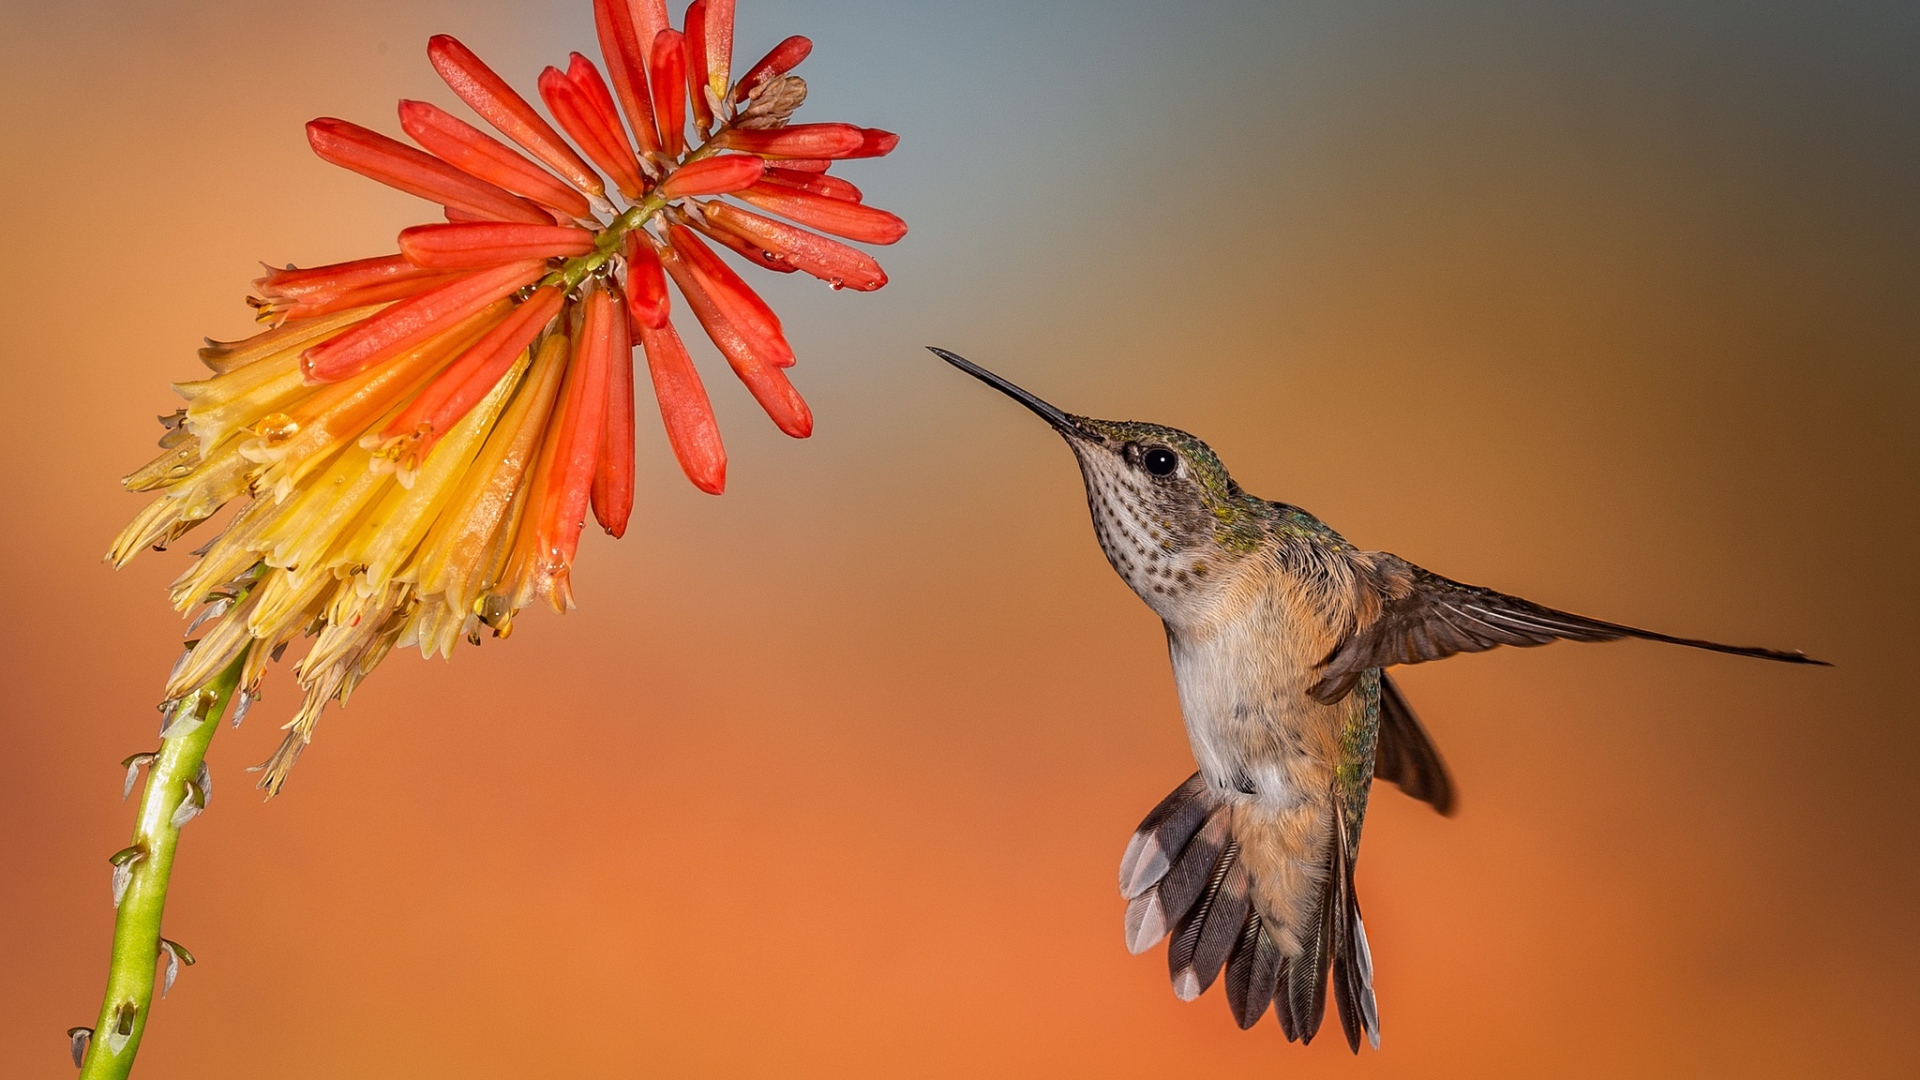 Hummingbird bird in flight at a red flower